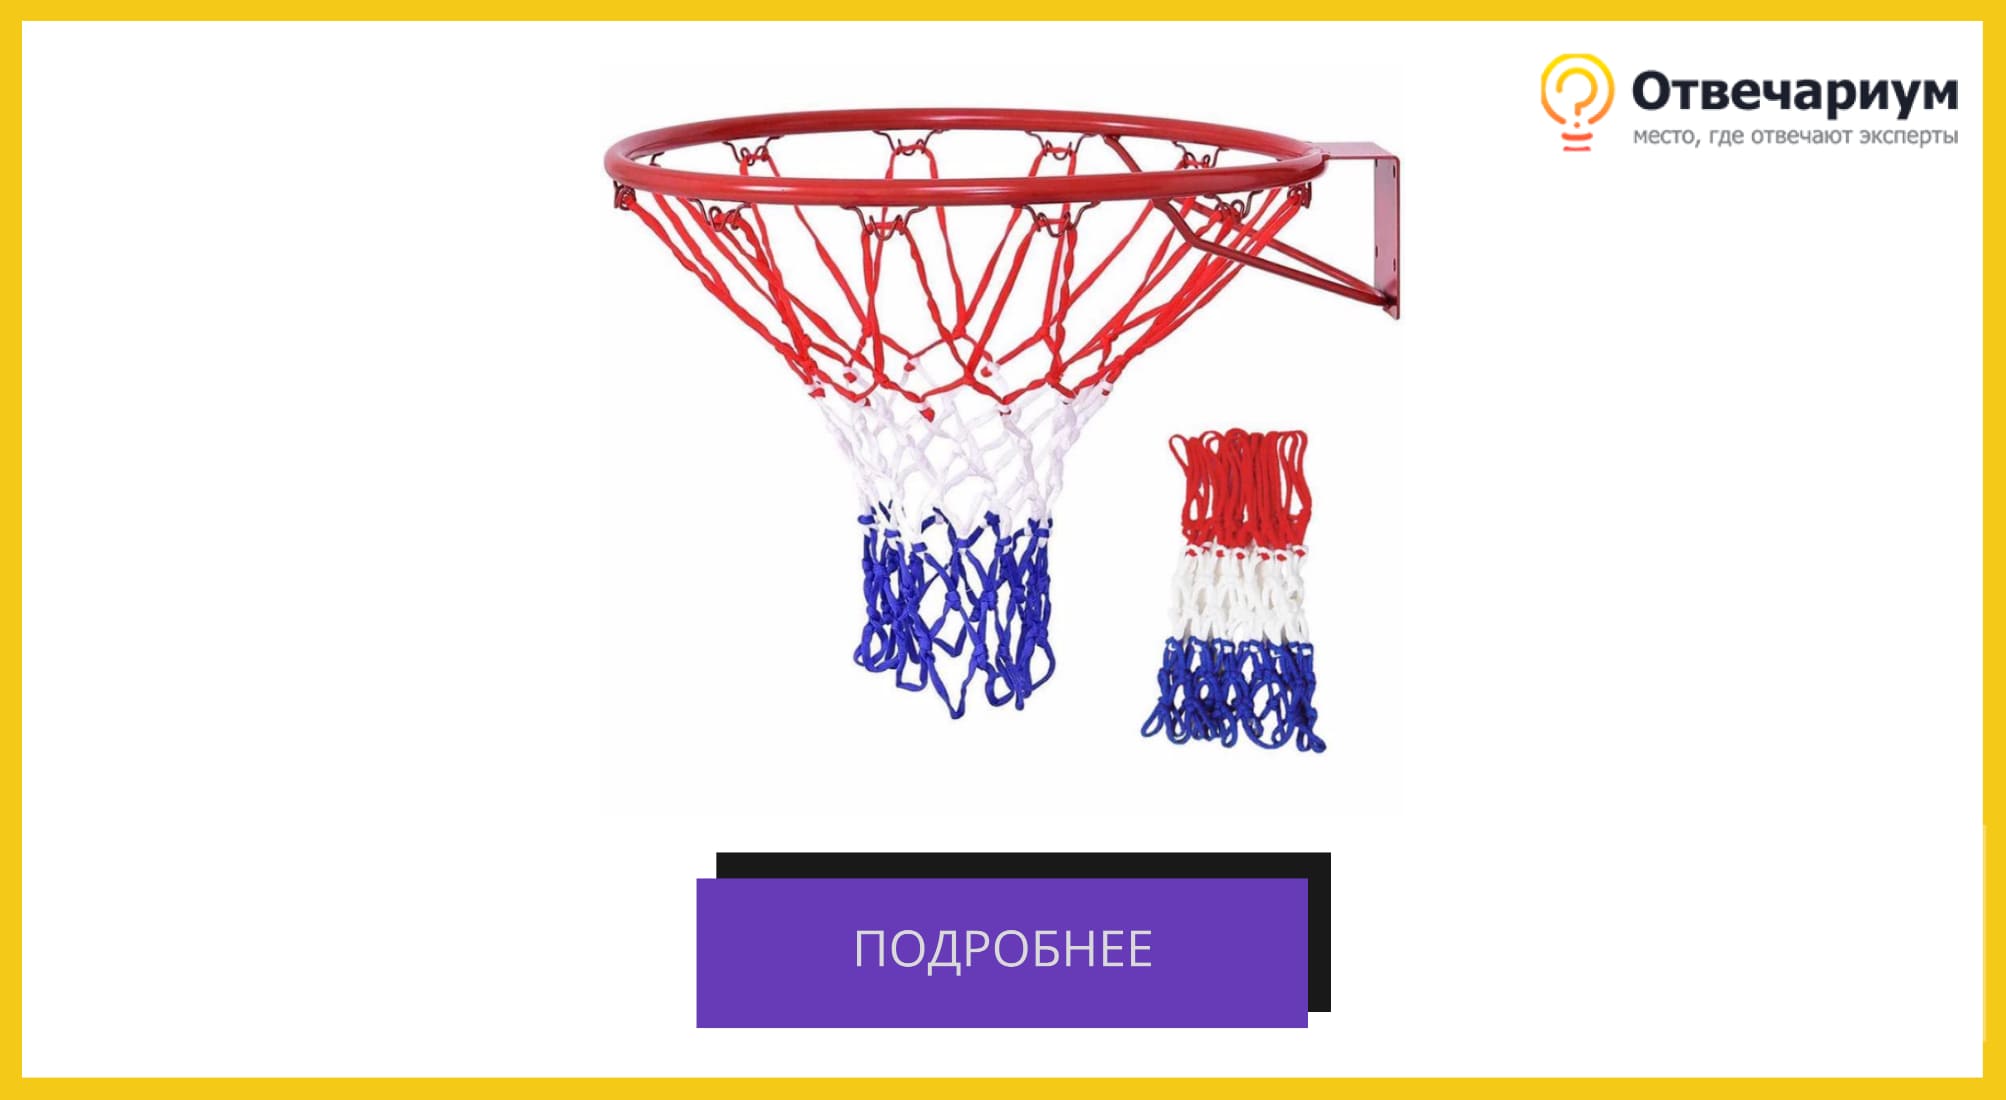 Баскетбольное кольцо с сеткой трех цветов: красной, белой, синей.